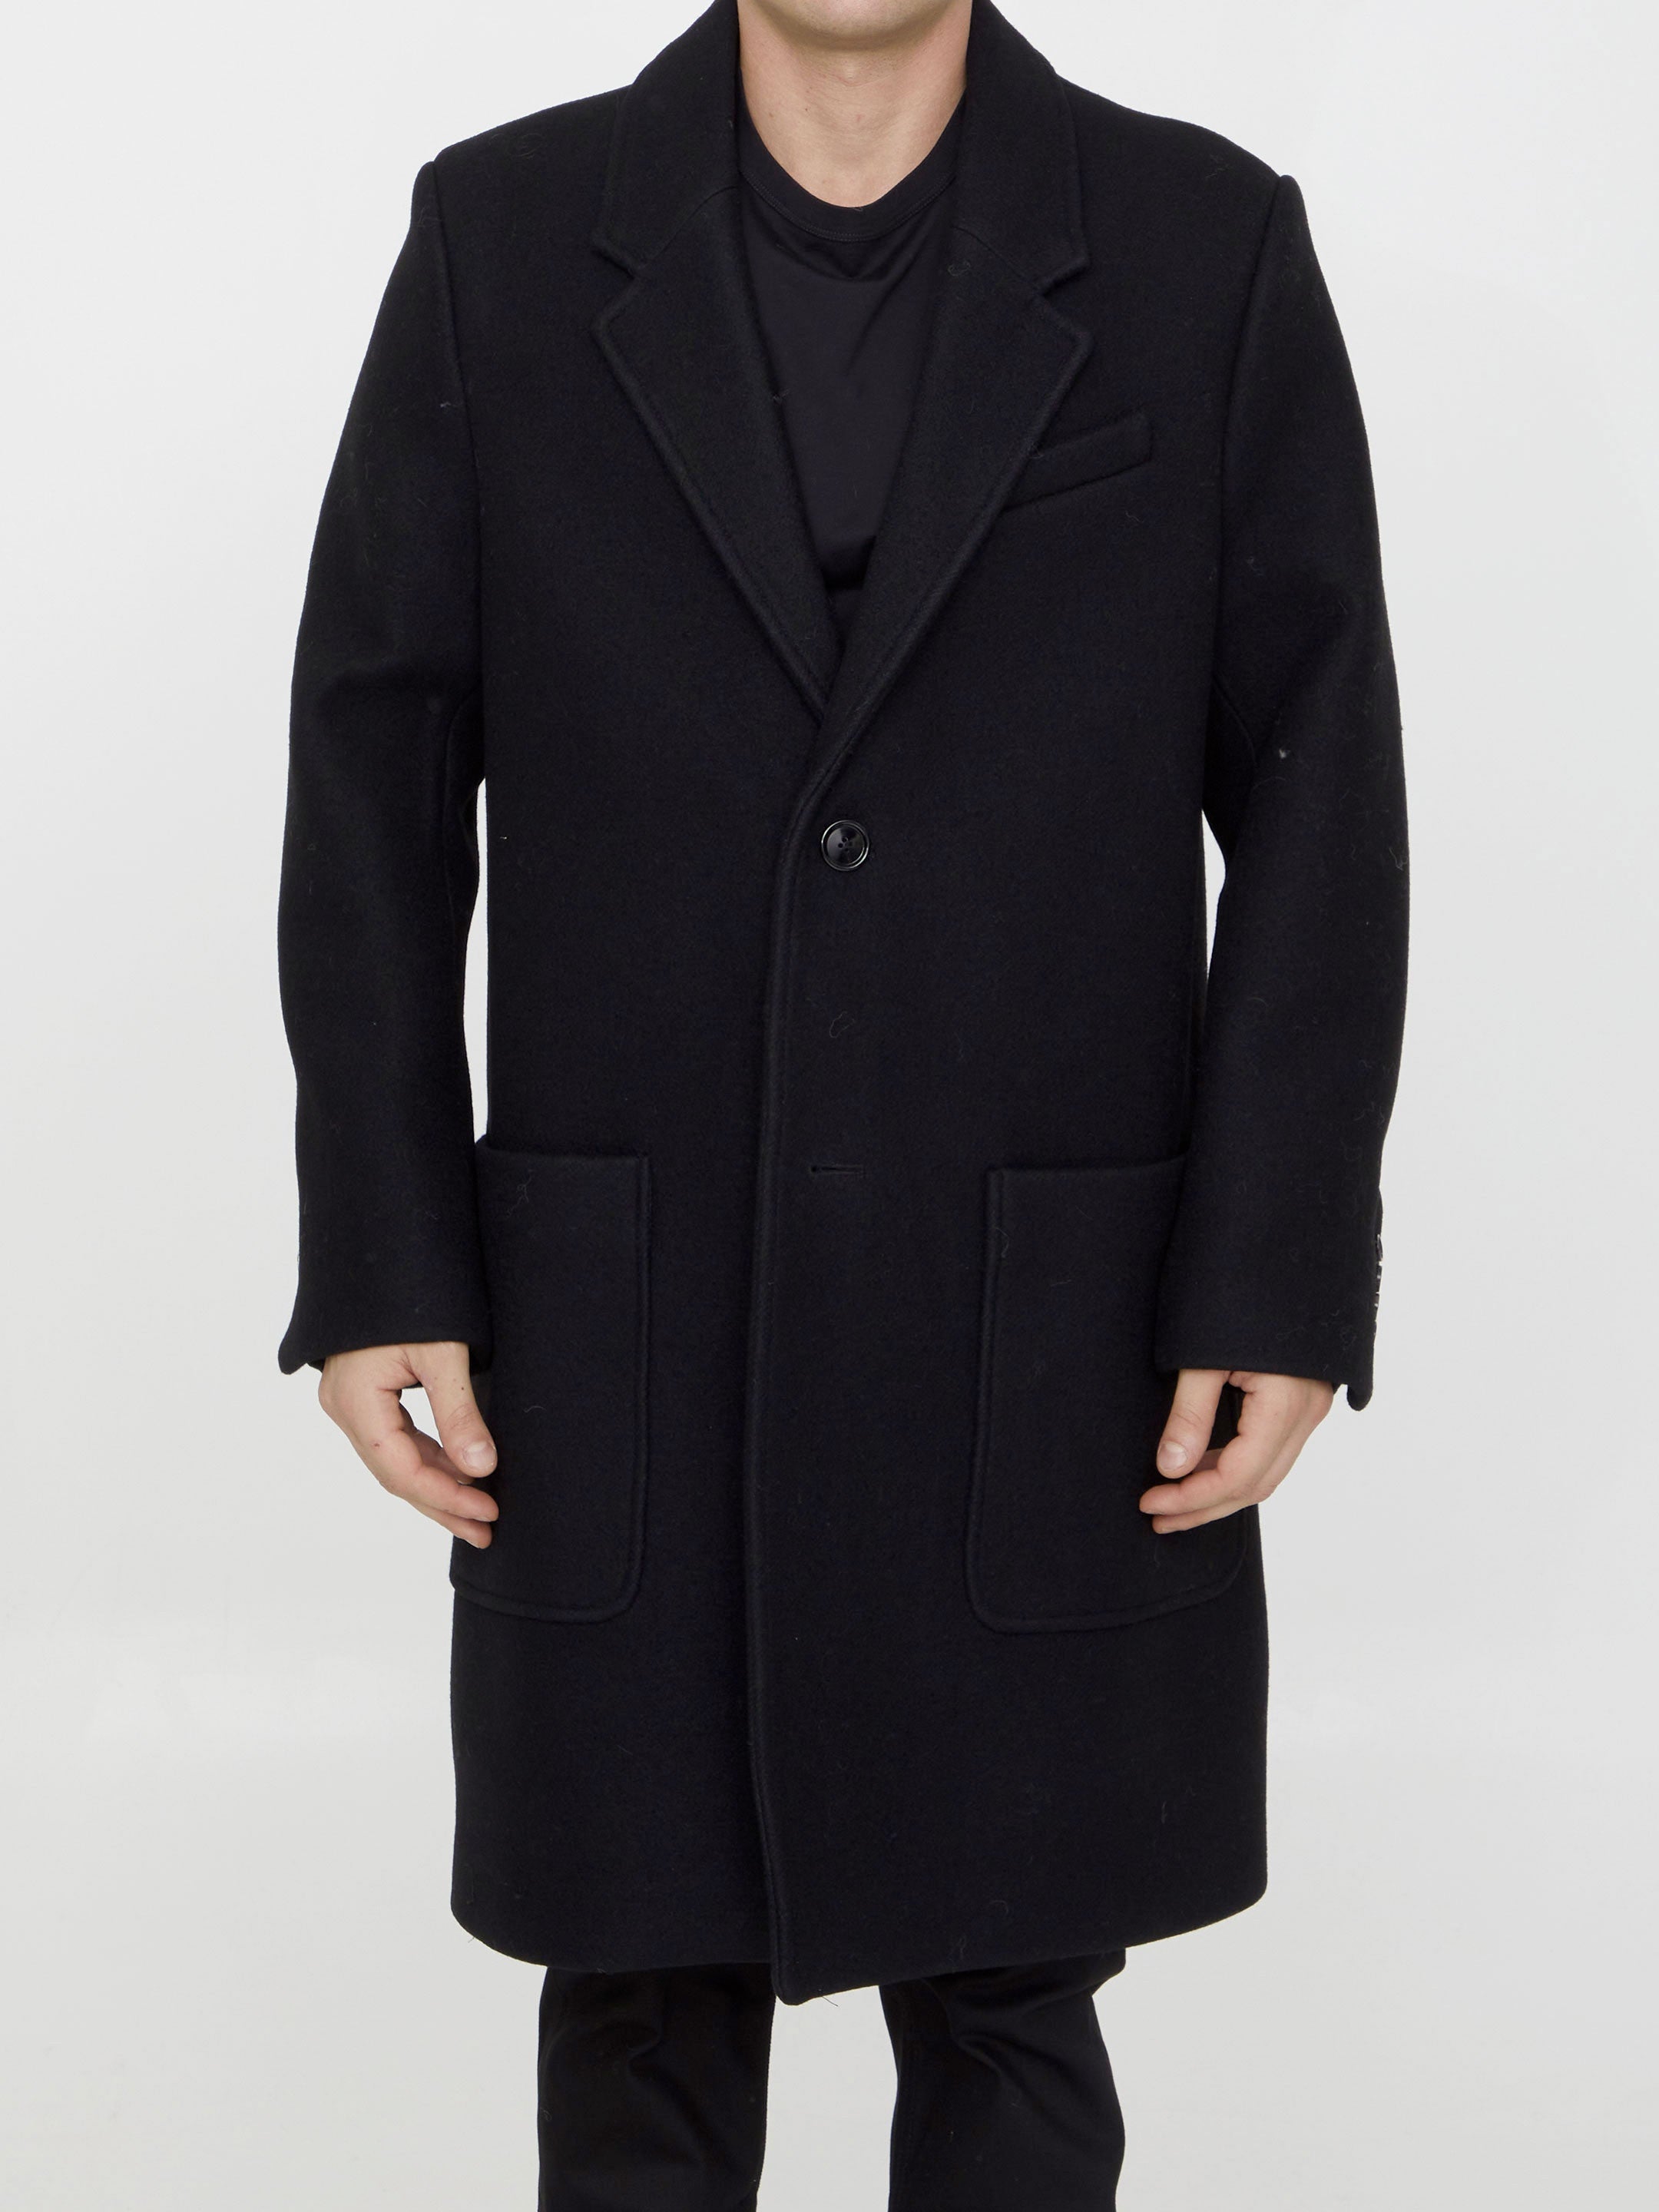 AMI-PARIS-OUTLET-SALE-Wool-coat-Jacken-Mantel-48-BLACK-ARCHIVE-COLLECTION.jpg